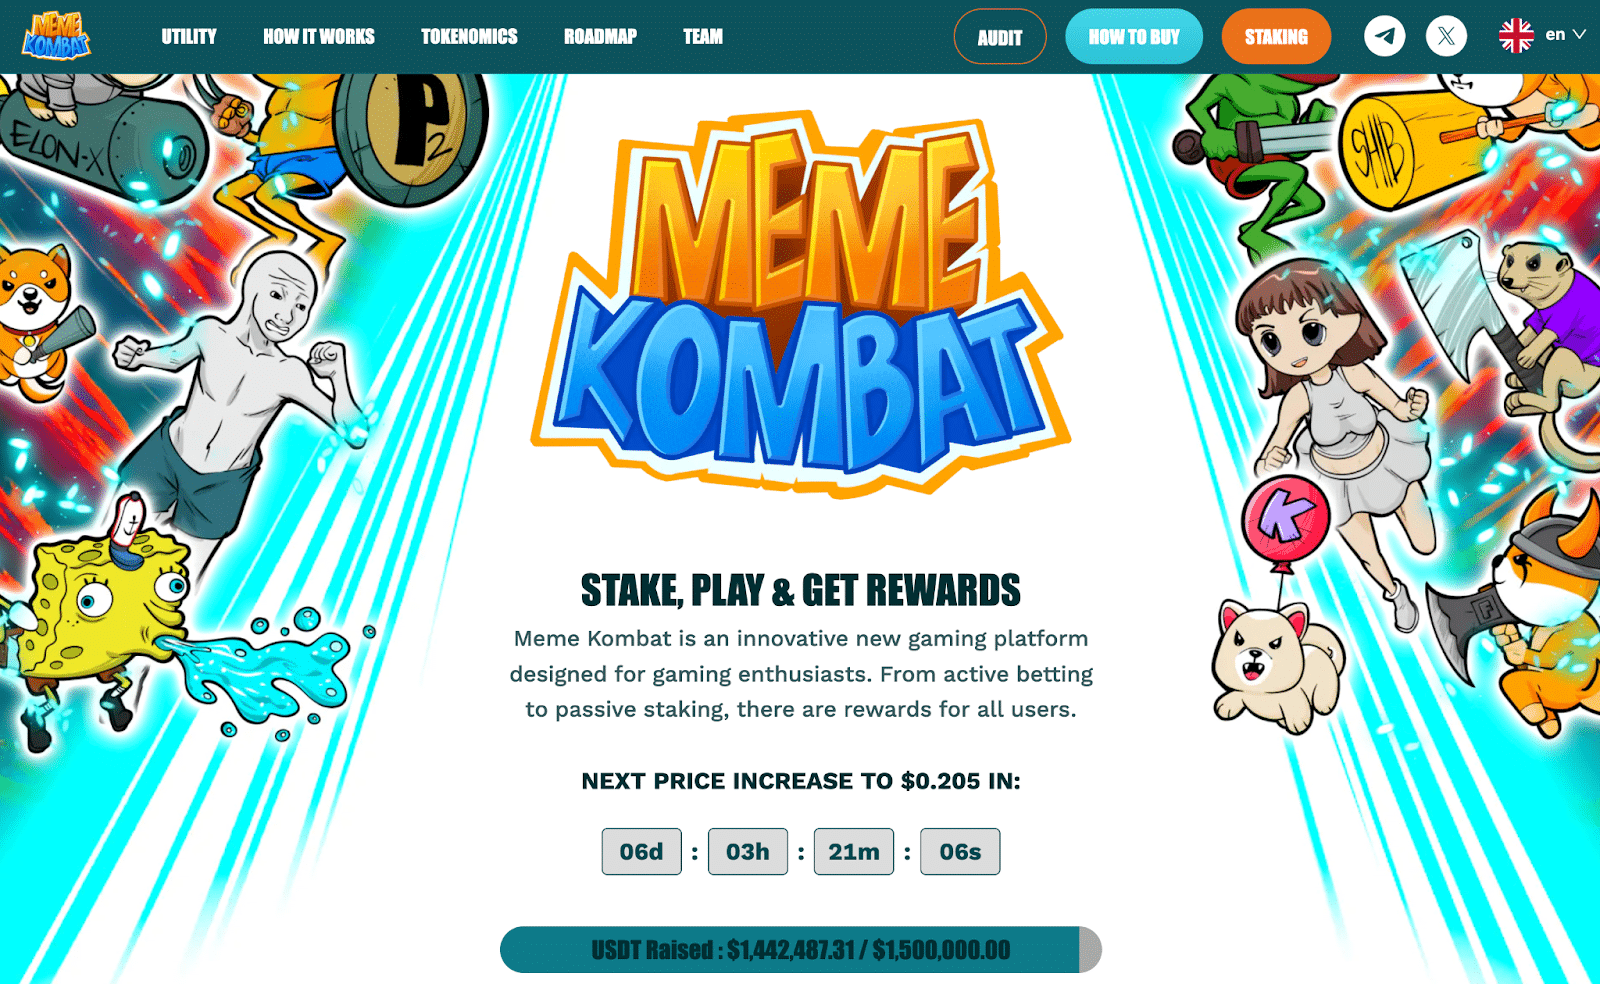 台湾GA黄金甲平台 Pepe币价格上涨25%　Meme Kombat为独特游戏平台筹集近150万美元　或将迎来100倍增长